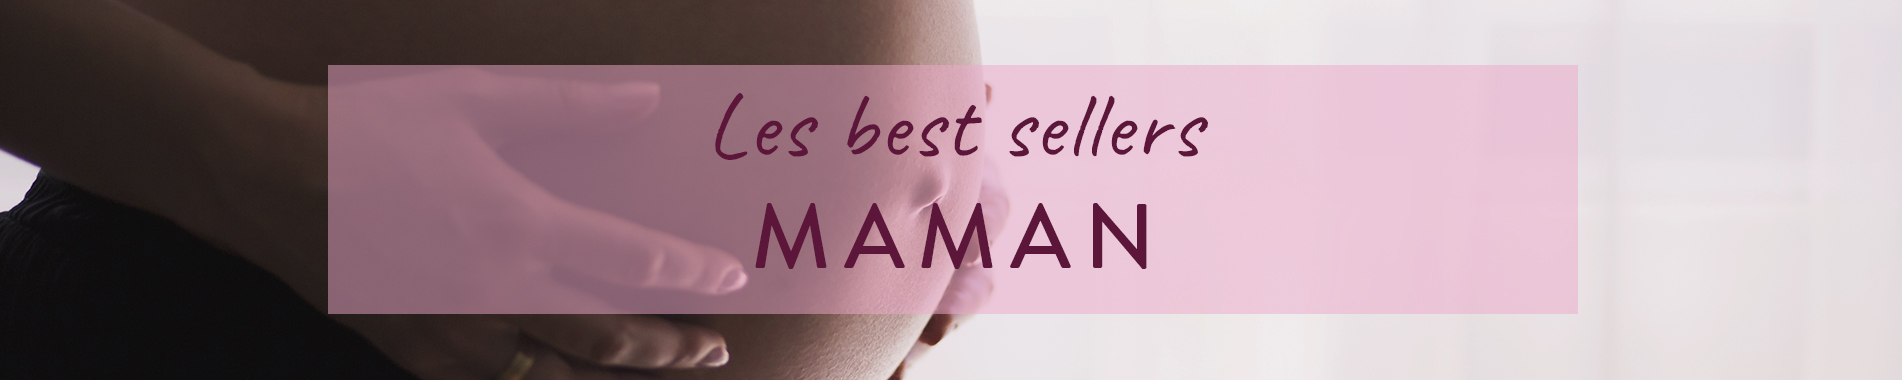 Best sellers : Les meilleures ventes de soins maman en parapharmacie